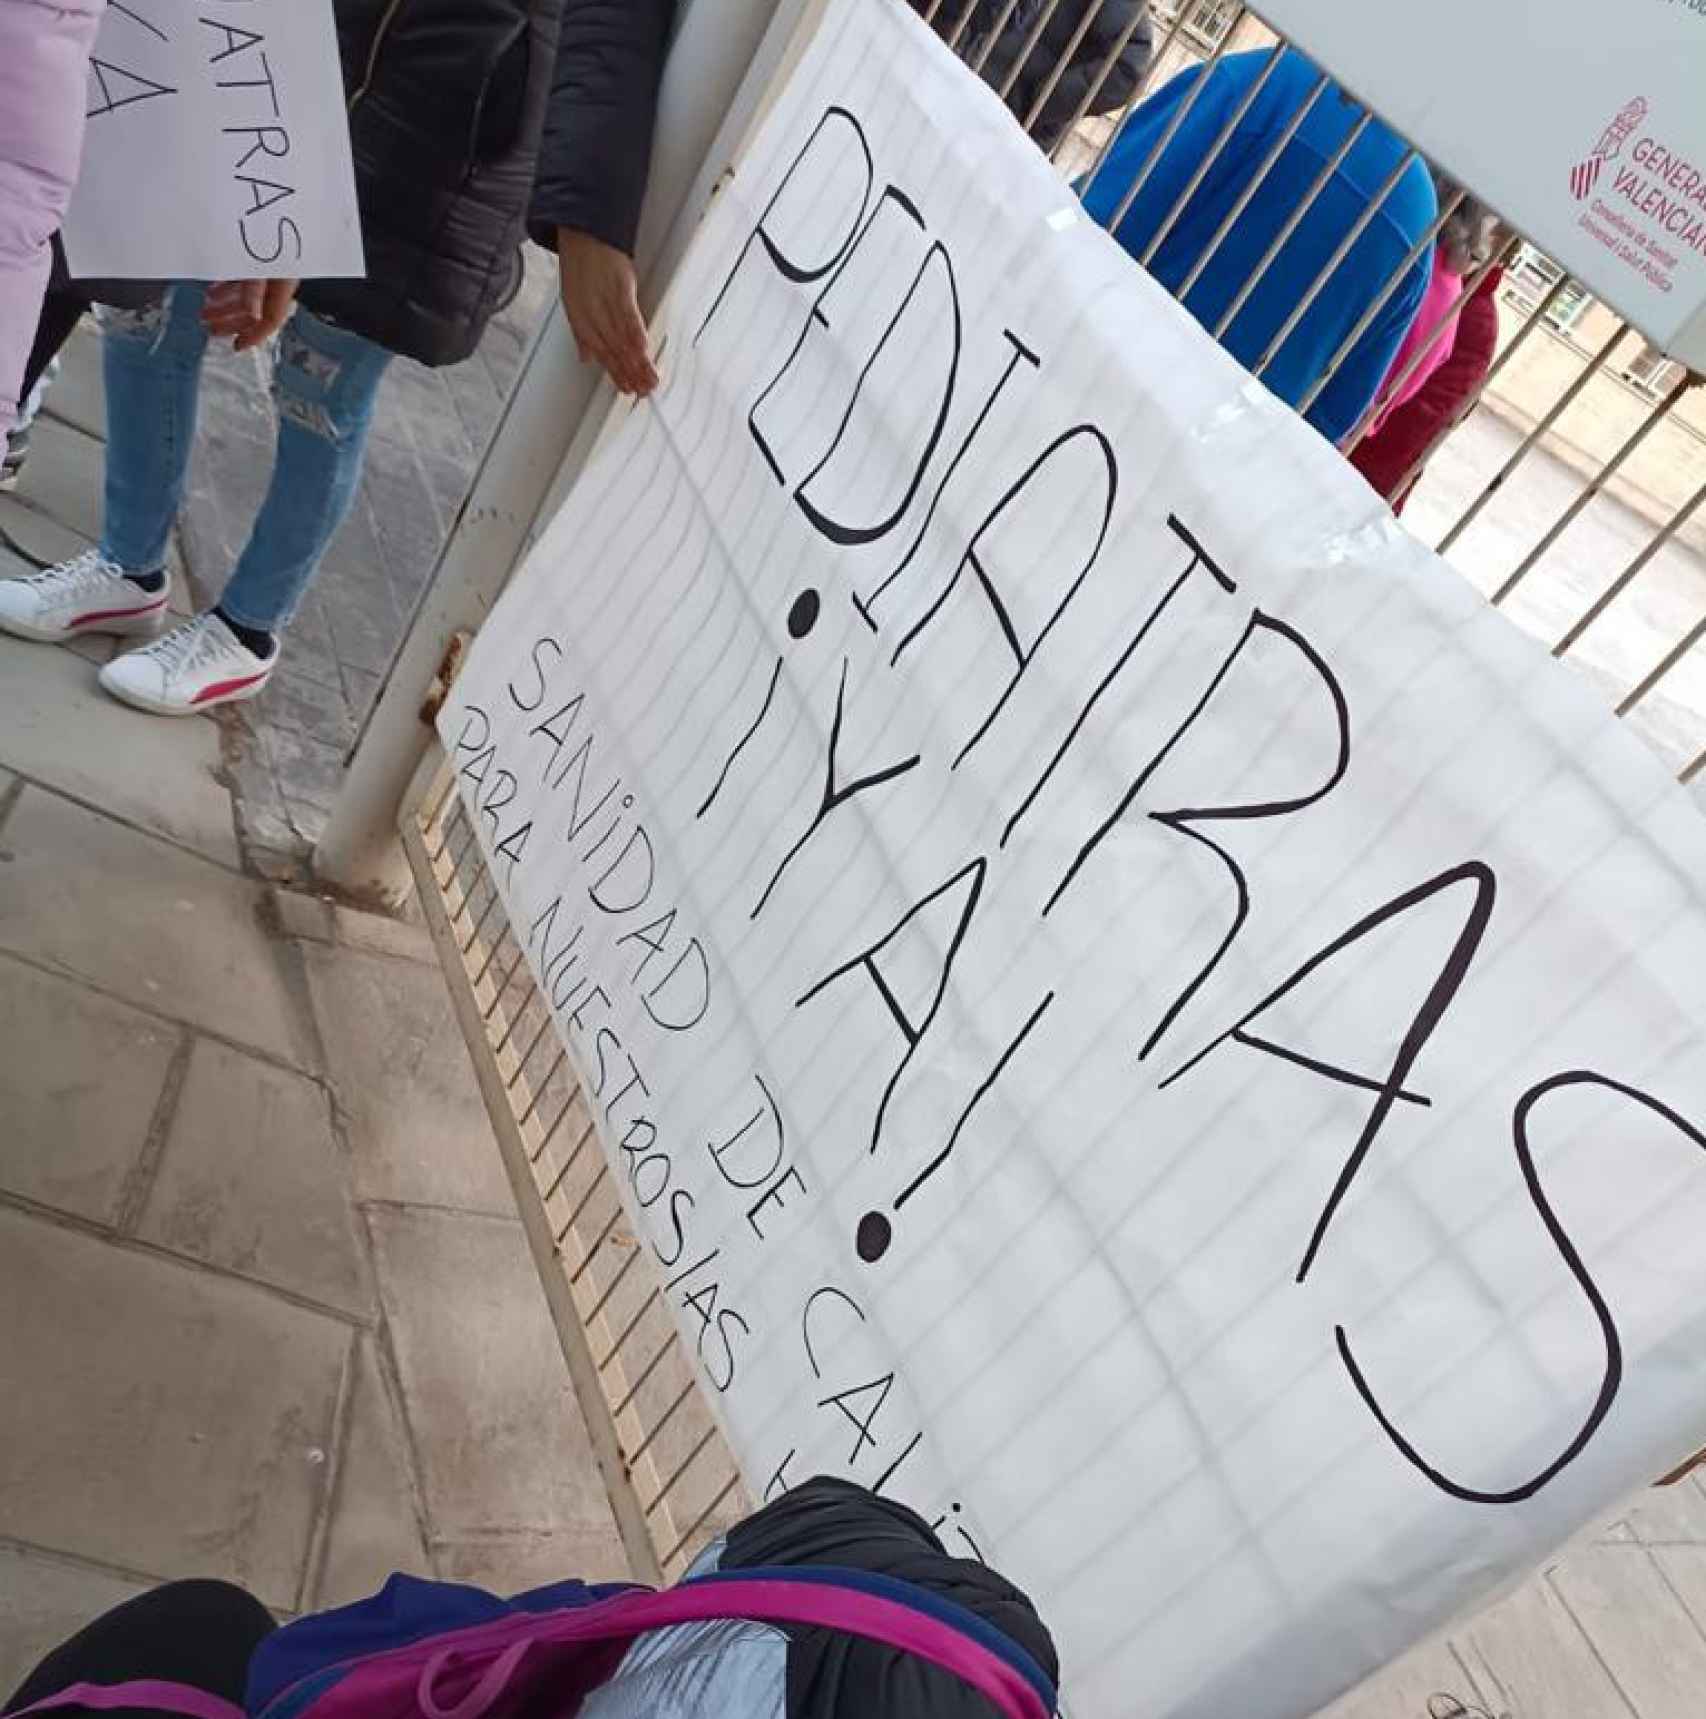 Una de las pancartas improvisadas exigiendo pediatras en Elda.